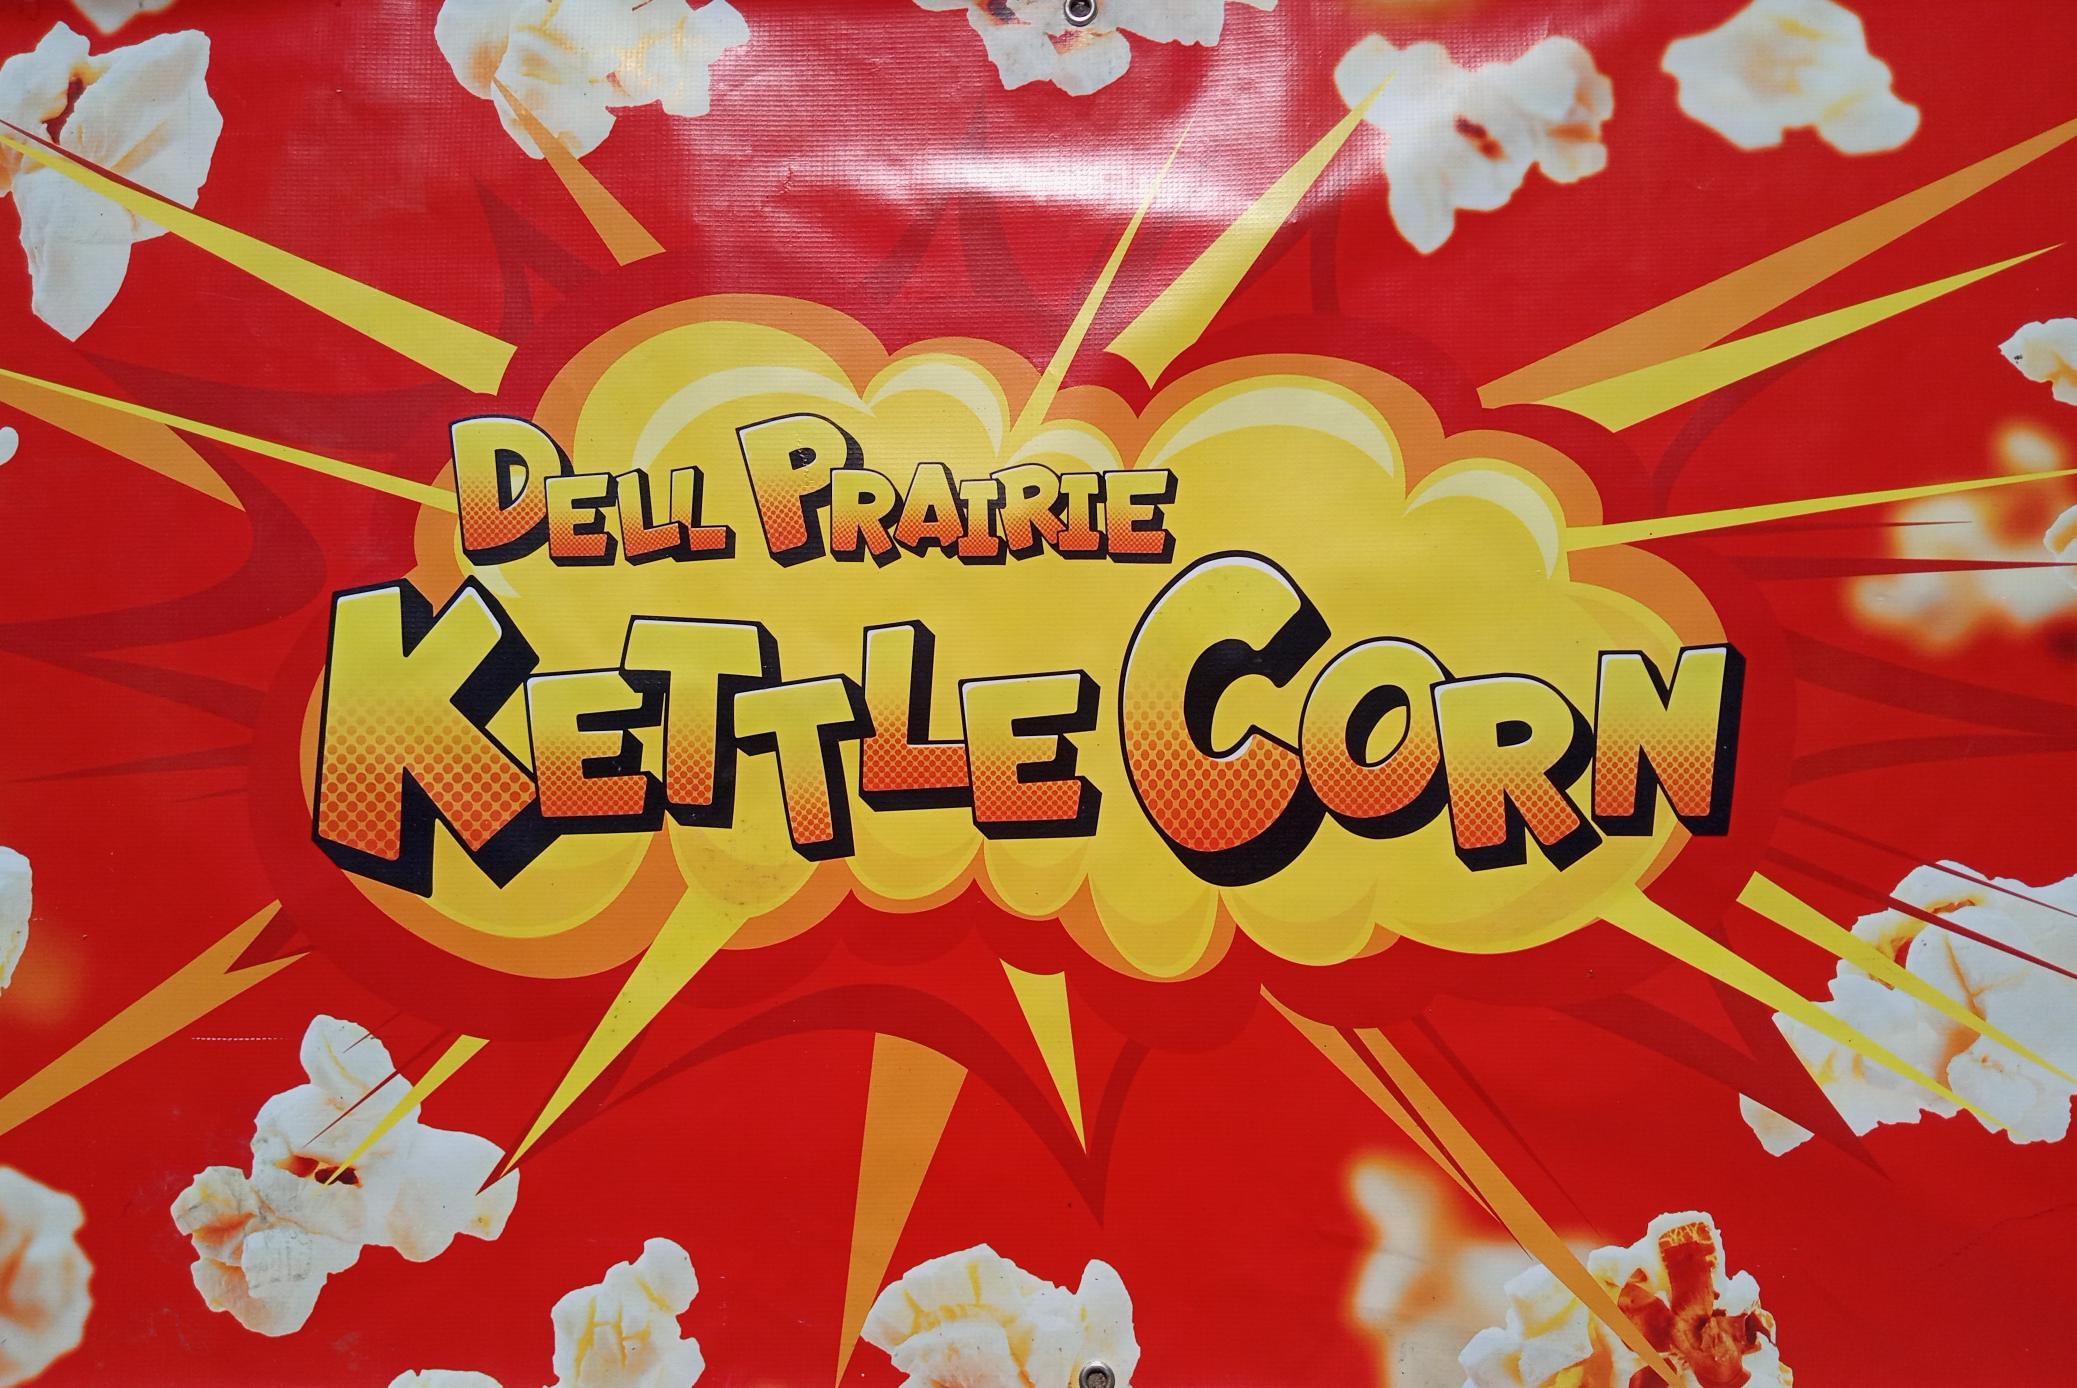 Dell Prairie Kettle Corn